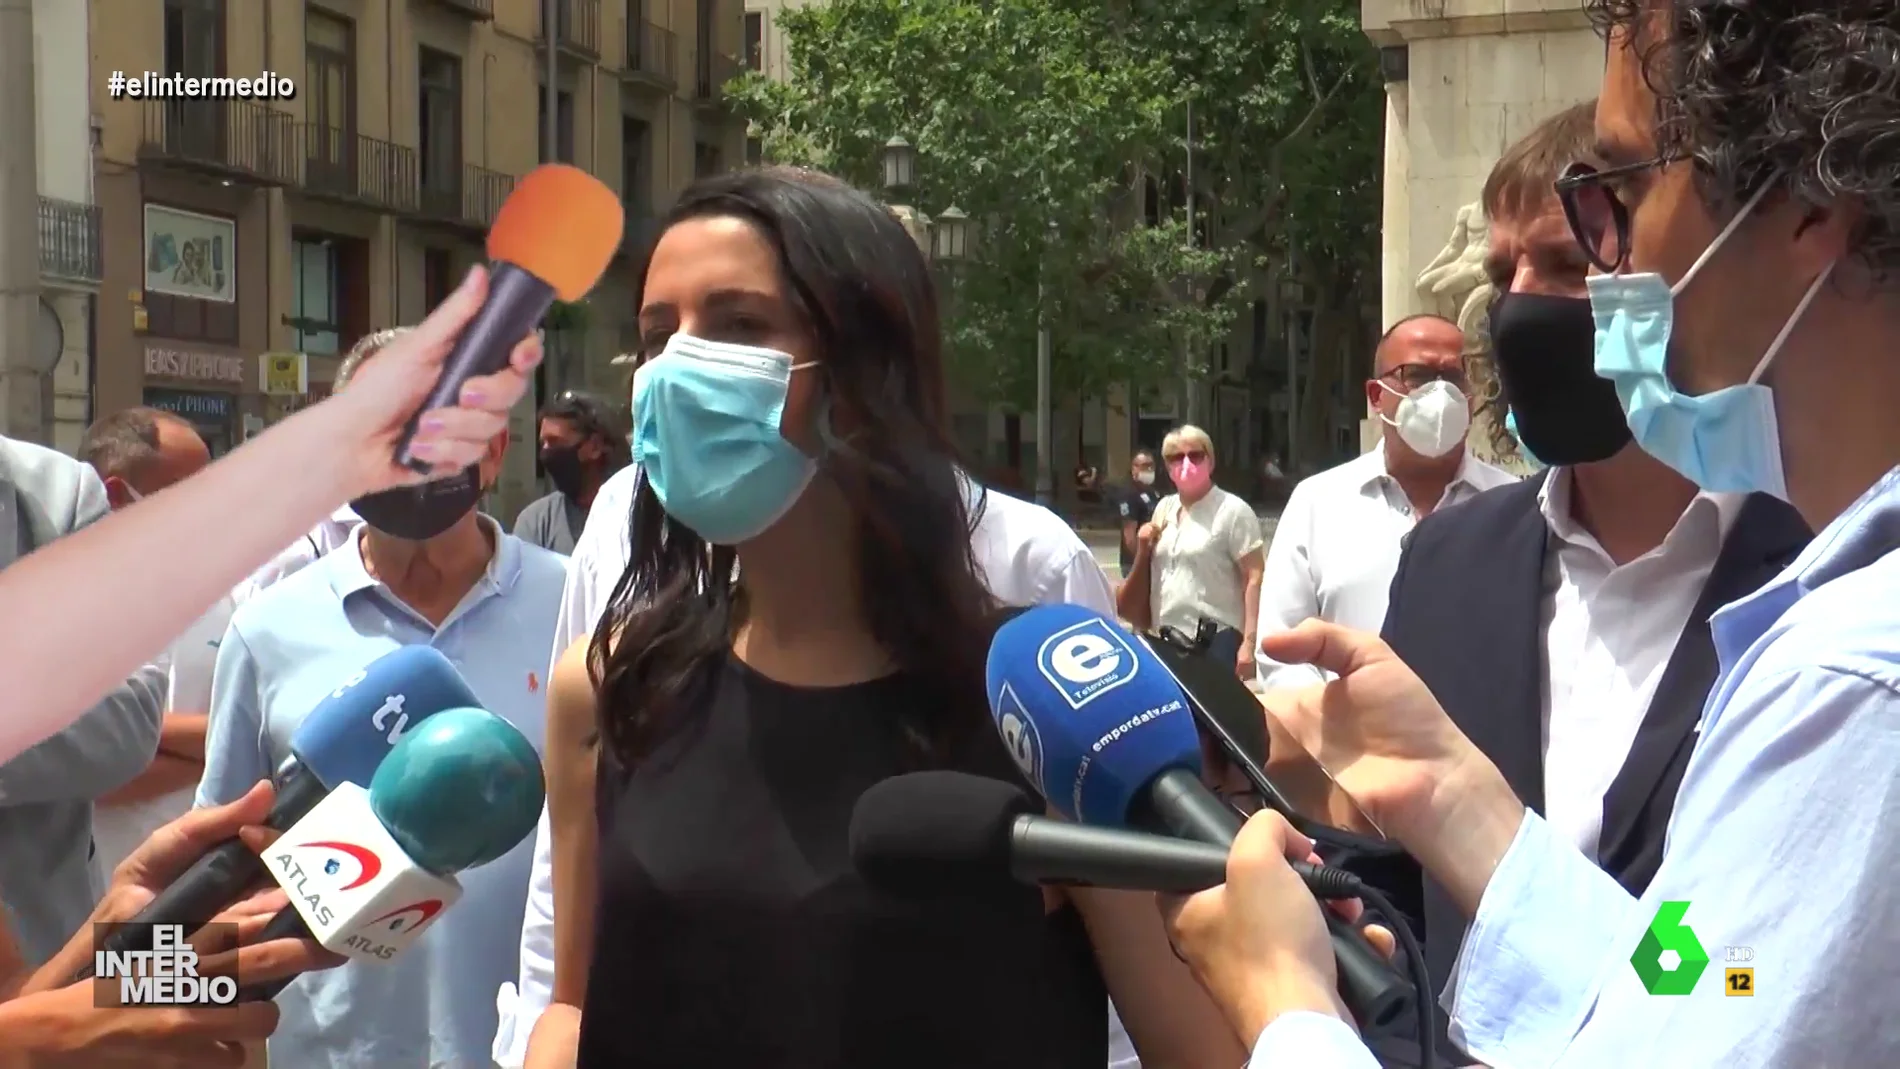 Vídeo manipulado - Un periodista golpea a Inés Arrimadas con un micrófono en la cabeza